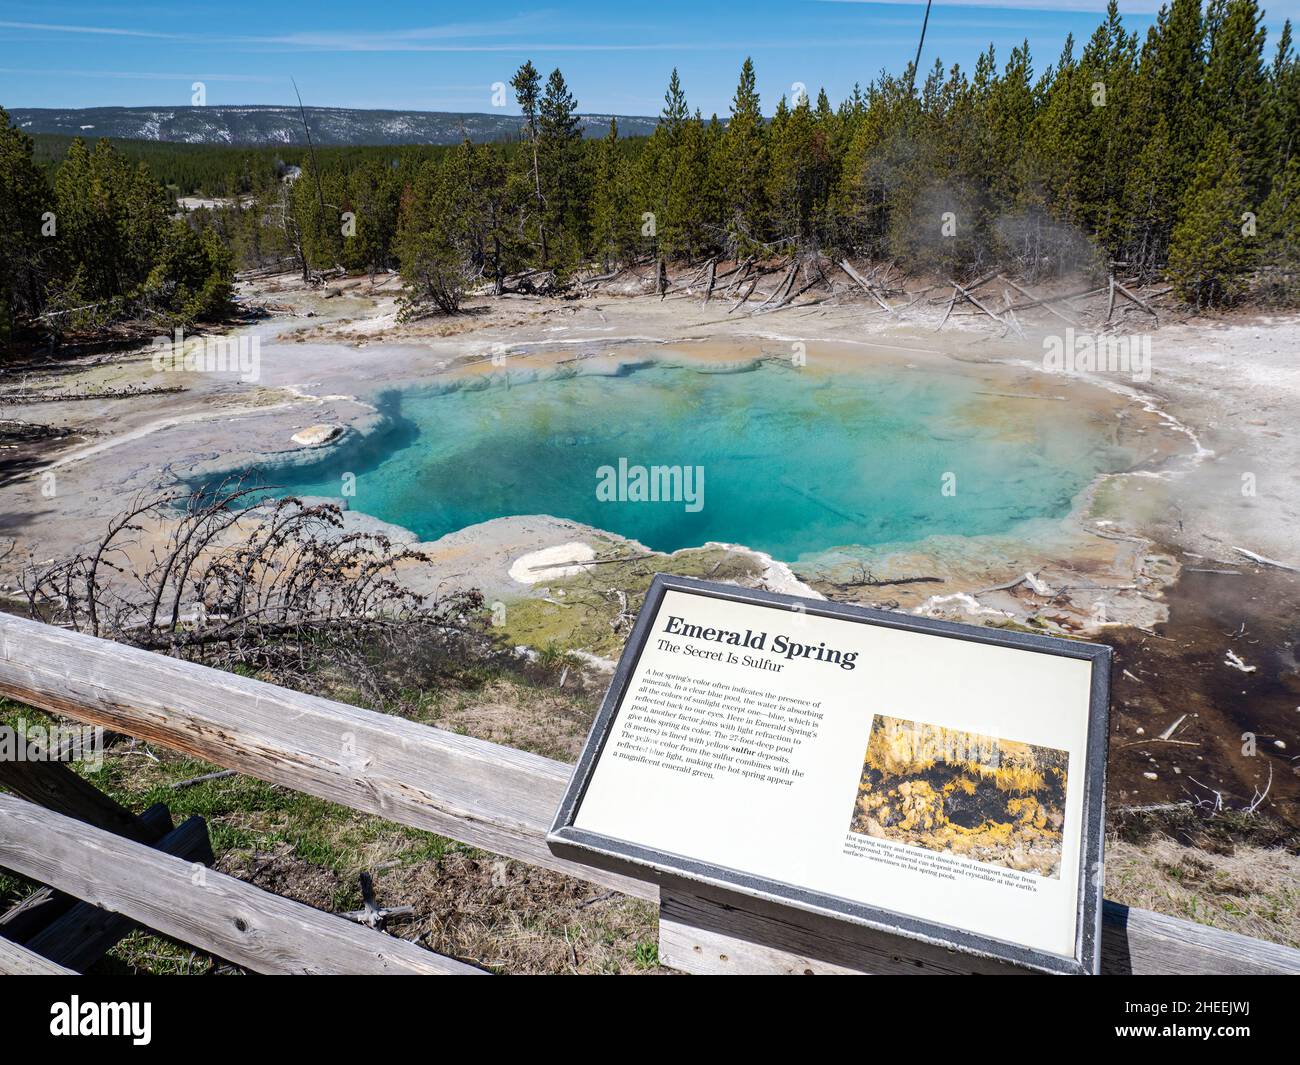 Emerald Spring dans le bassin de Norris Geyser, parc national de Yellowstone, Wyoming, États-Unis. Banque D'Images